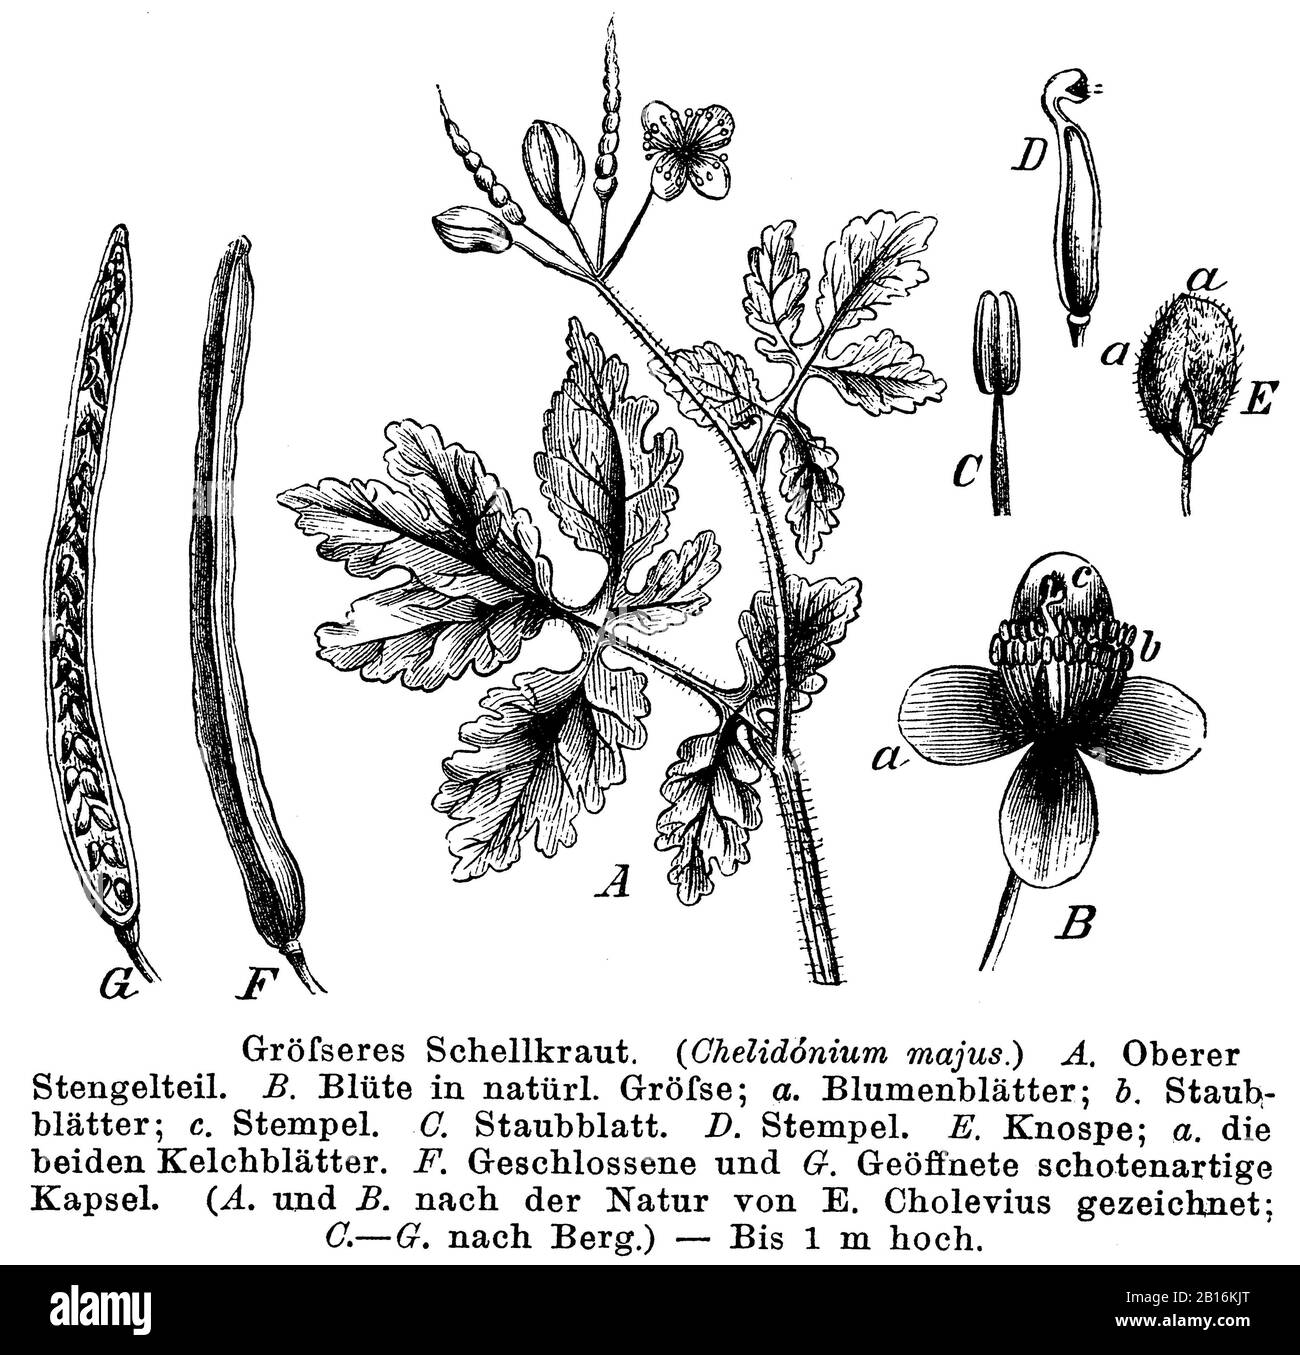 greater celandine, Chelidonium majus, Größeres Schöllkraut, Grande Chélidoine, anonym (botany book, 1884) Stock Photo